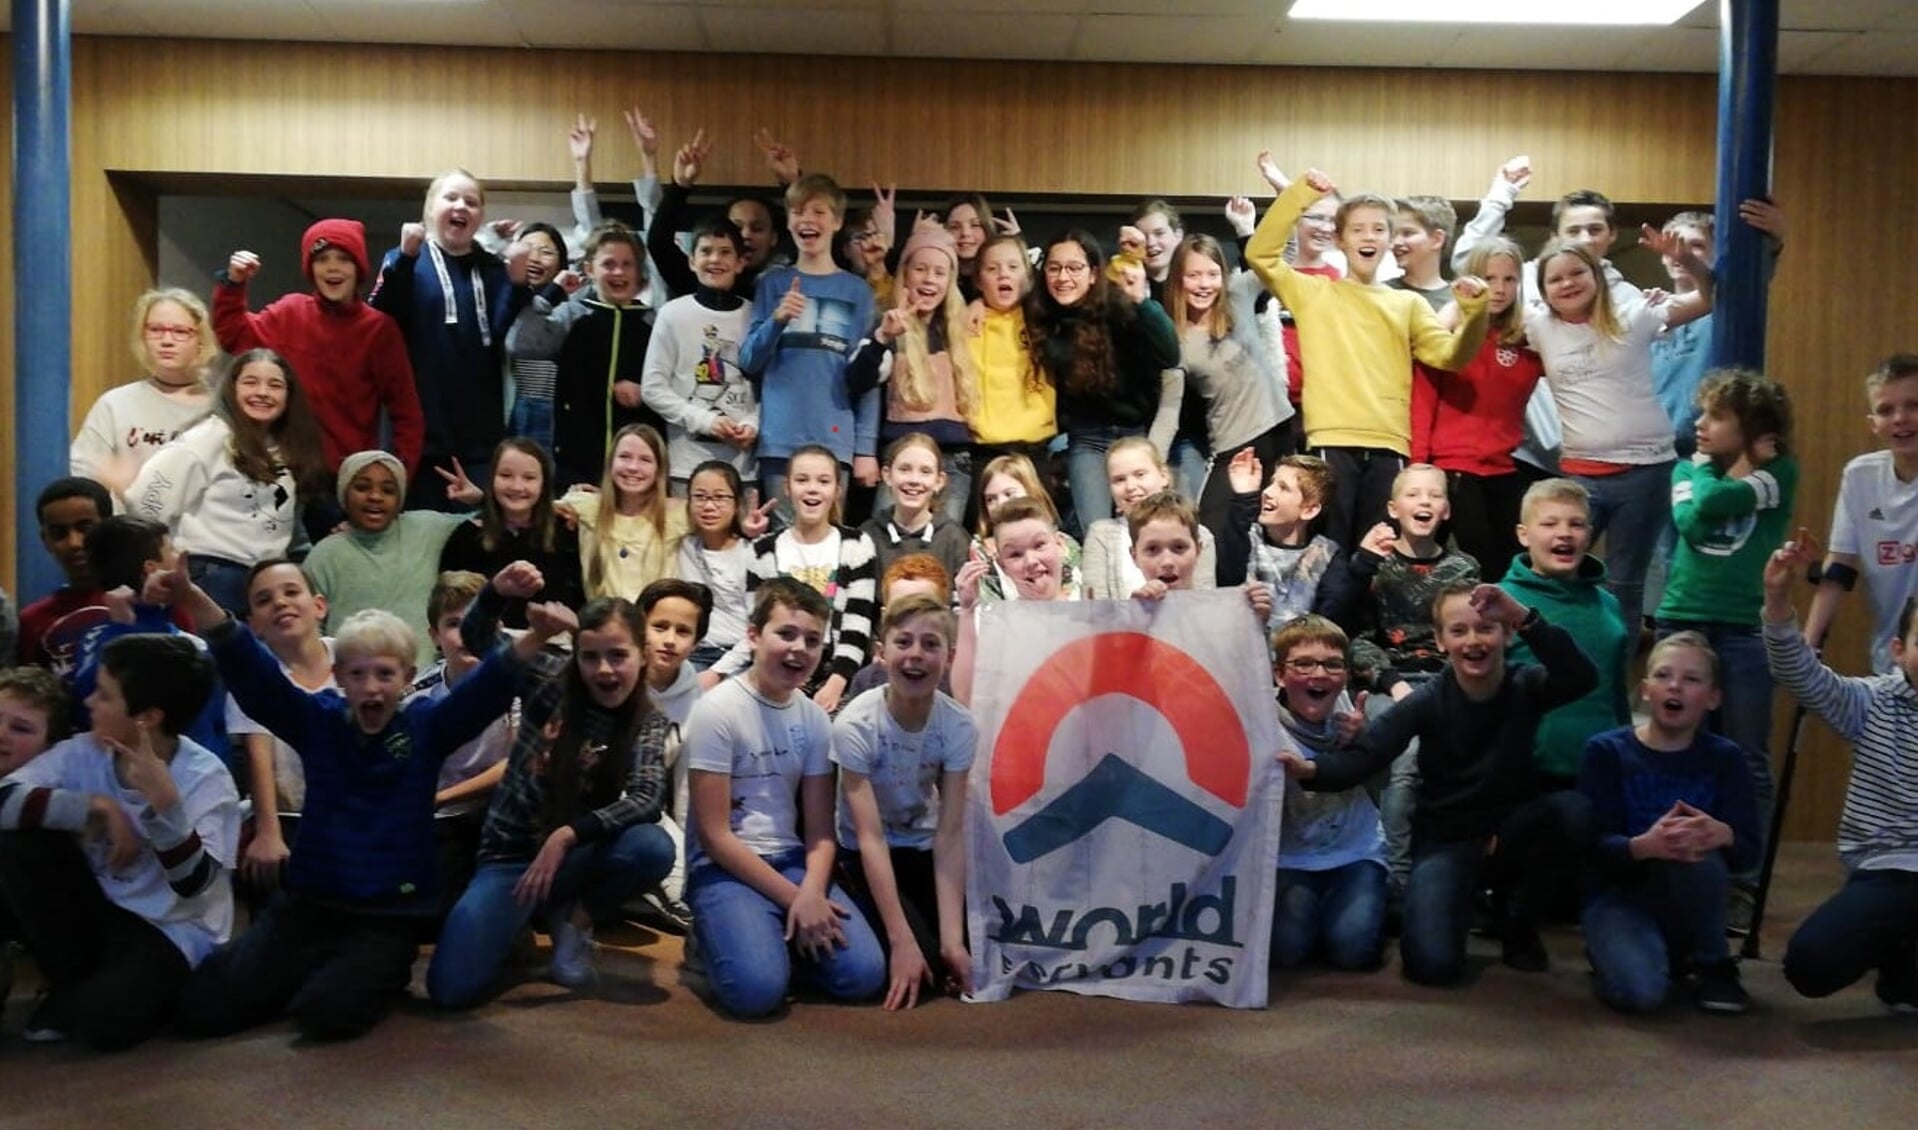 De groepen 7, 8a en 8b van de Koepelschool met de vlag van World Servants